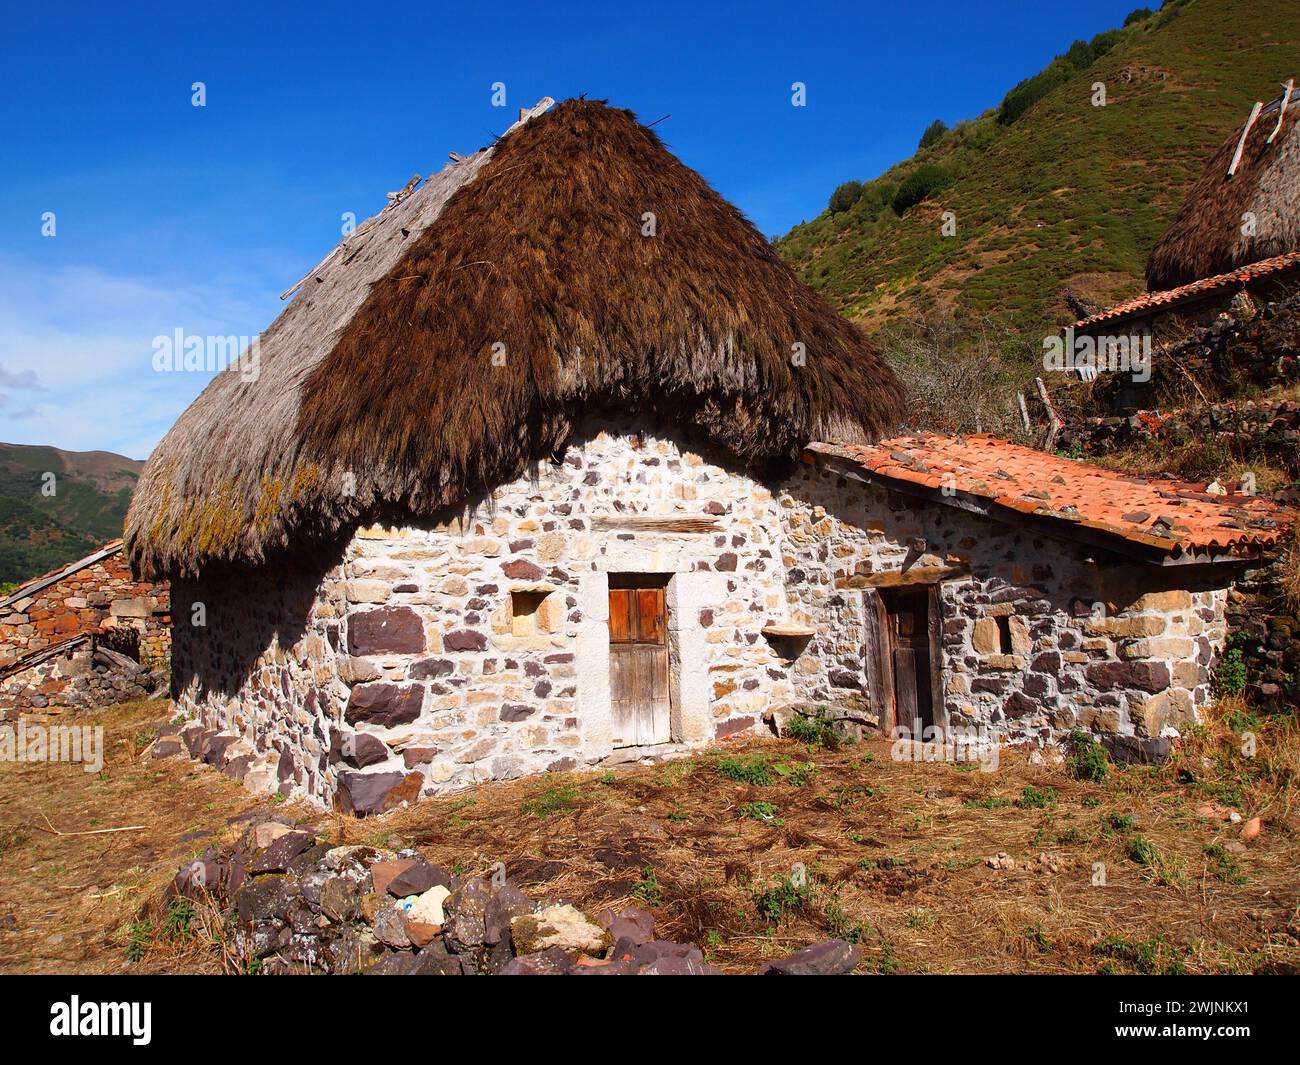 Ein altes Holz- und Strohgebäude im keltischen Stil in den Bergen, um die Tiere der Herde zu lagern Stockfoto